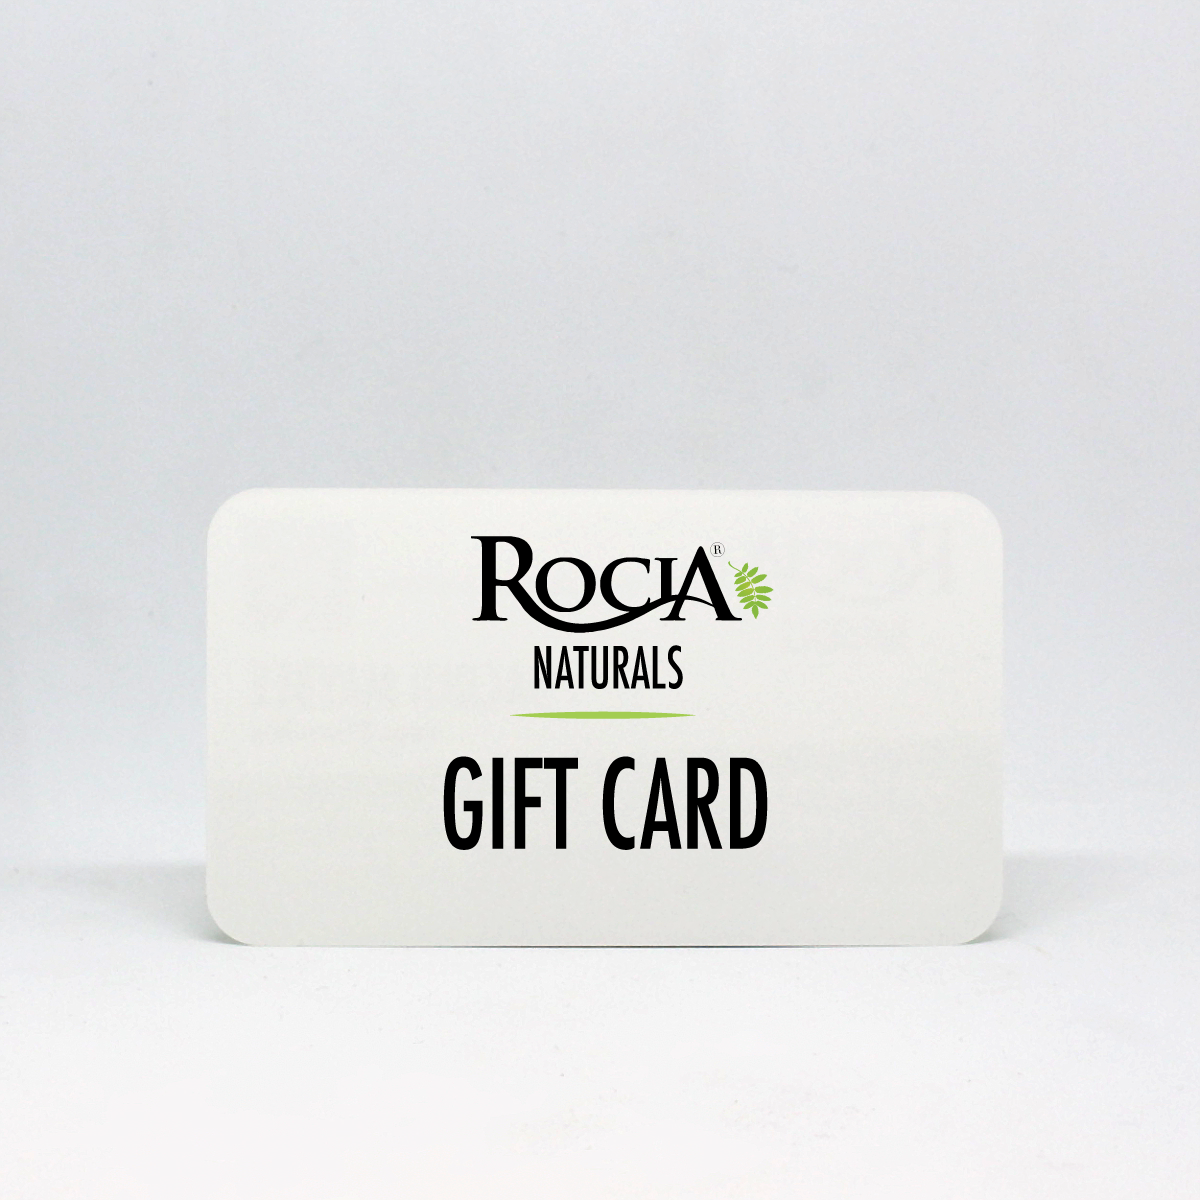 Cream yoga e-gift card